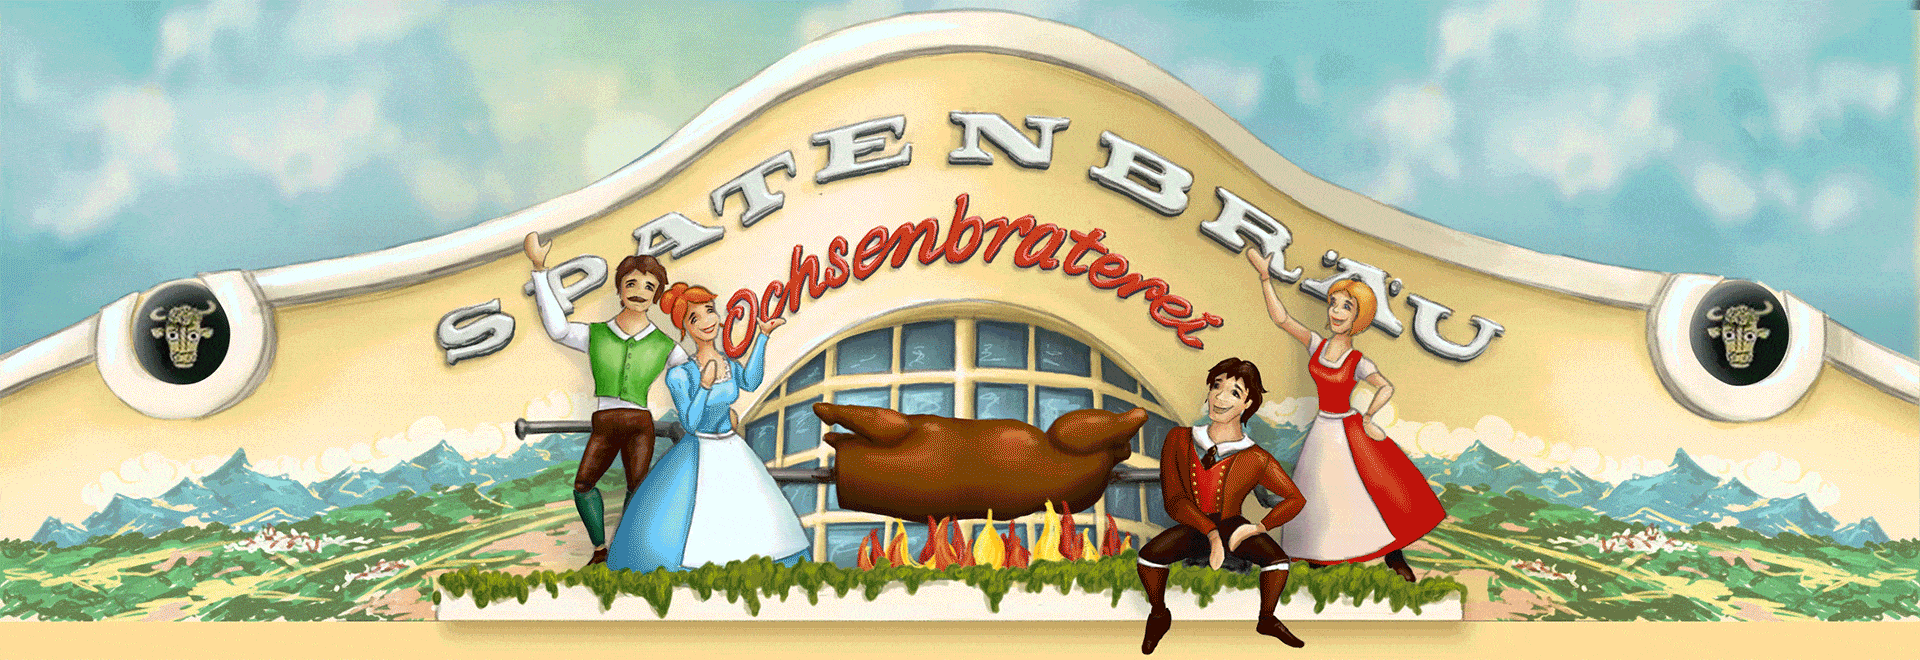 Die Headeranimation zeigt die illustrierte Fassade der Ochsenbraterei München. Mit vier Figuren in Tracht neben einem Ochsenbraten über offenem Feuer.